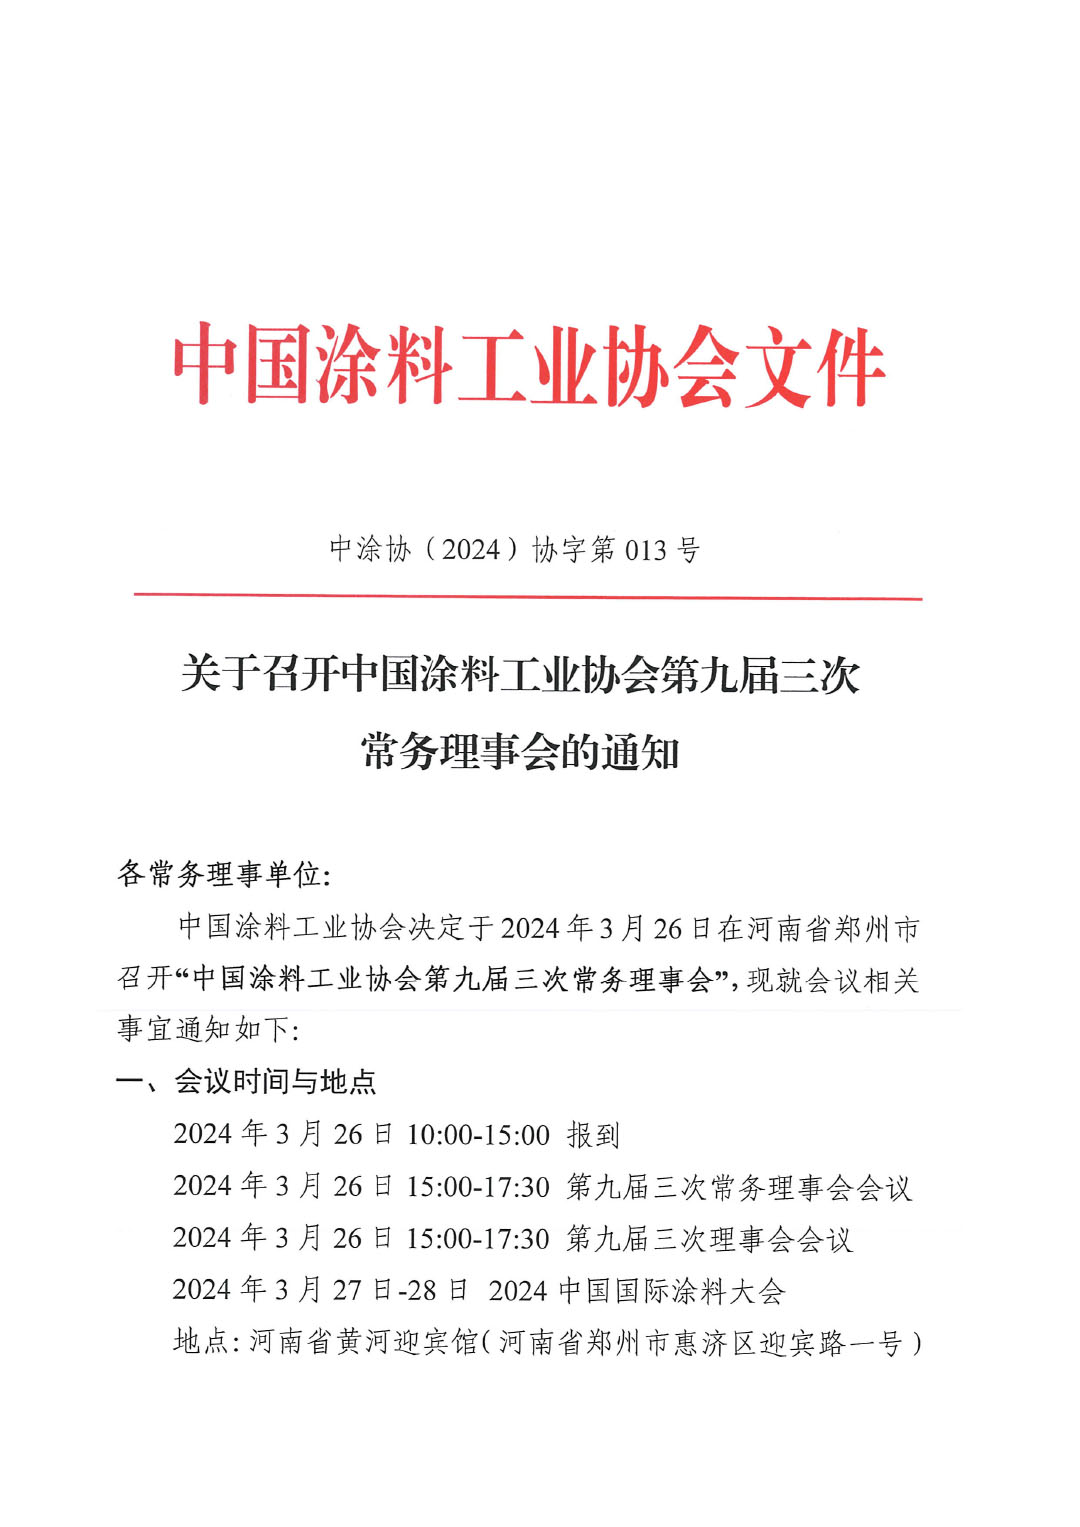 关于召开中国涂料工业协会第九届三次常务理事会的通知-1